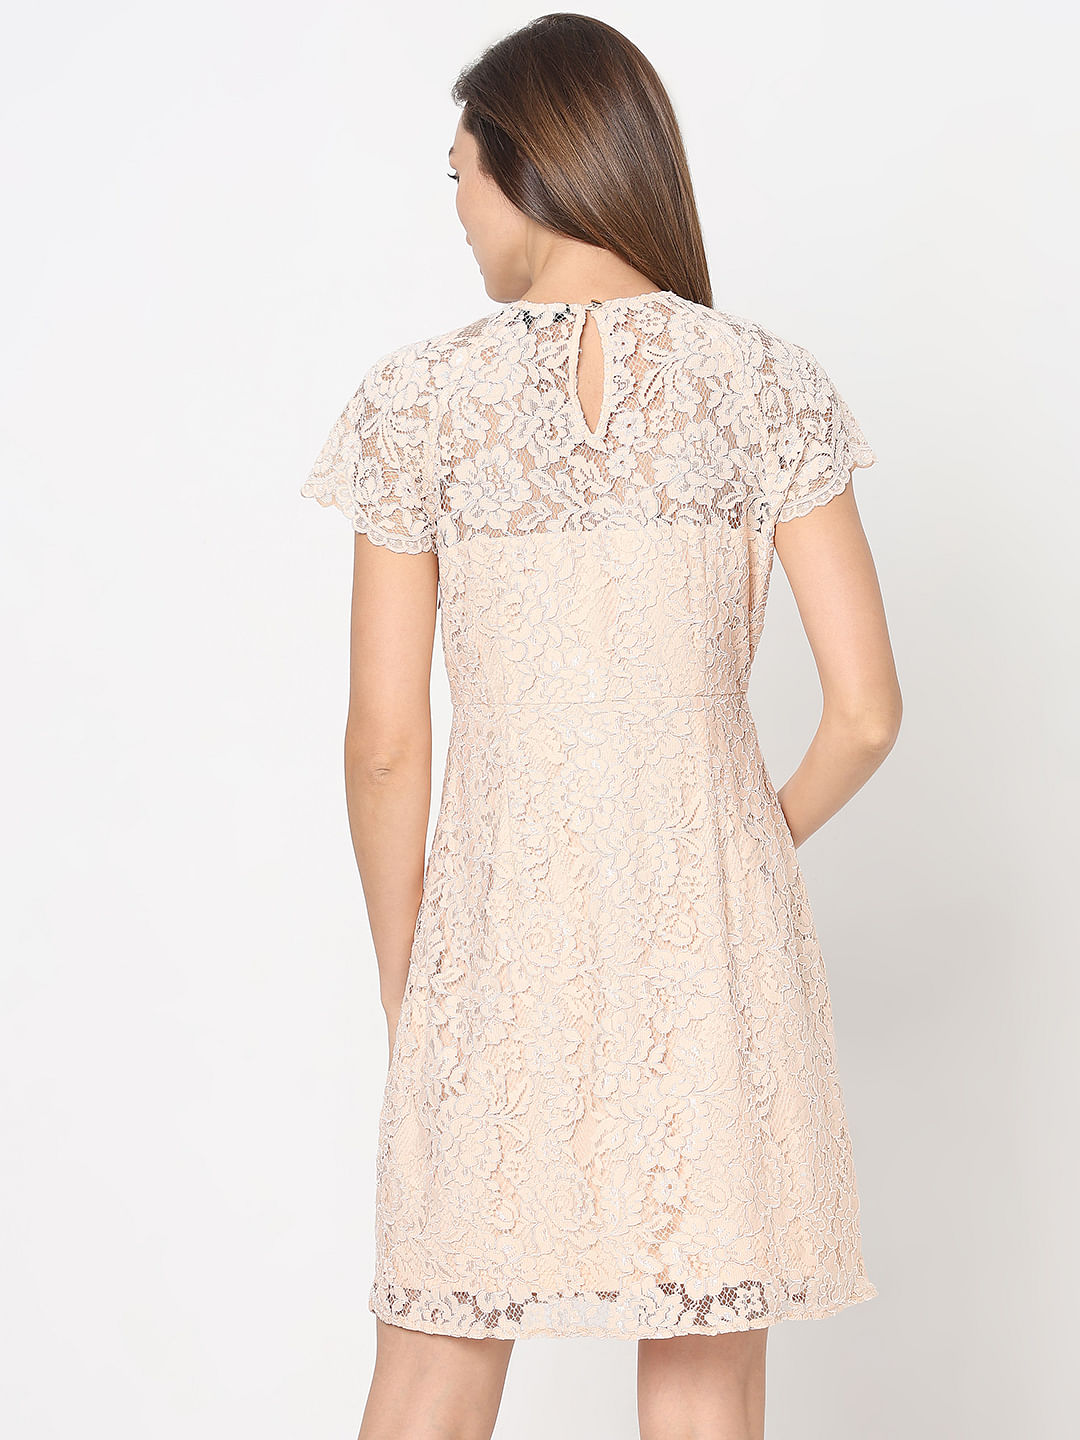 Peach Floral Lace Dress